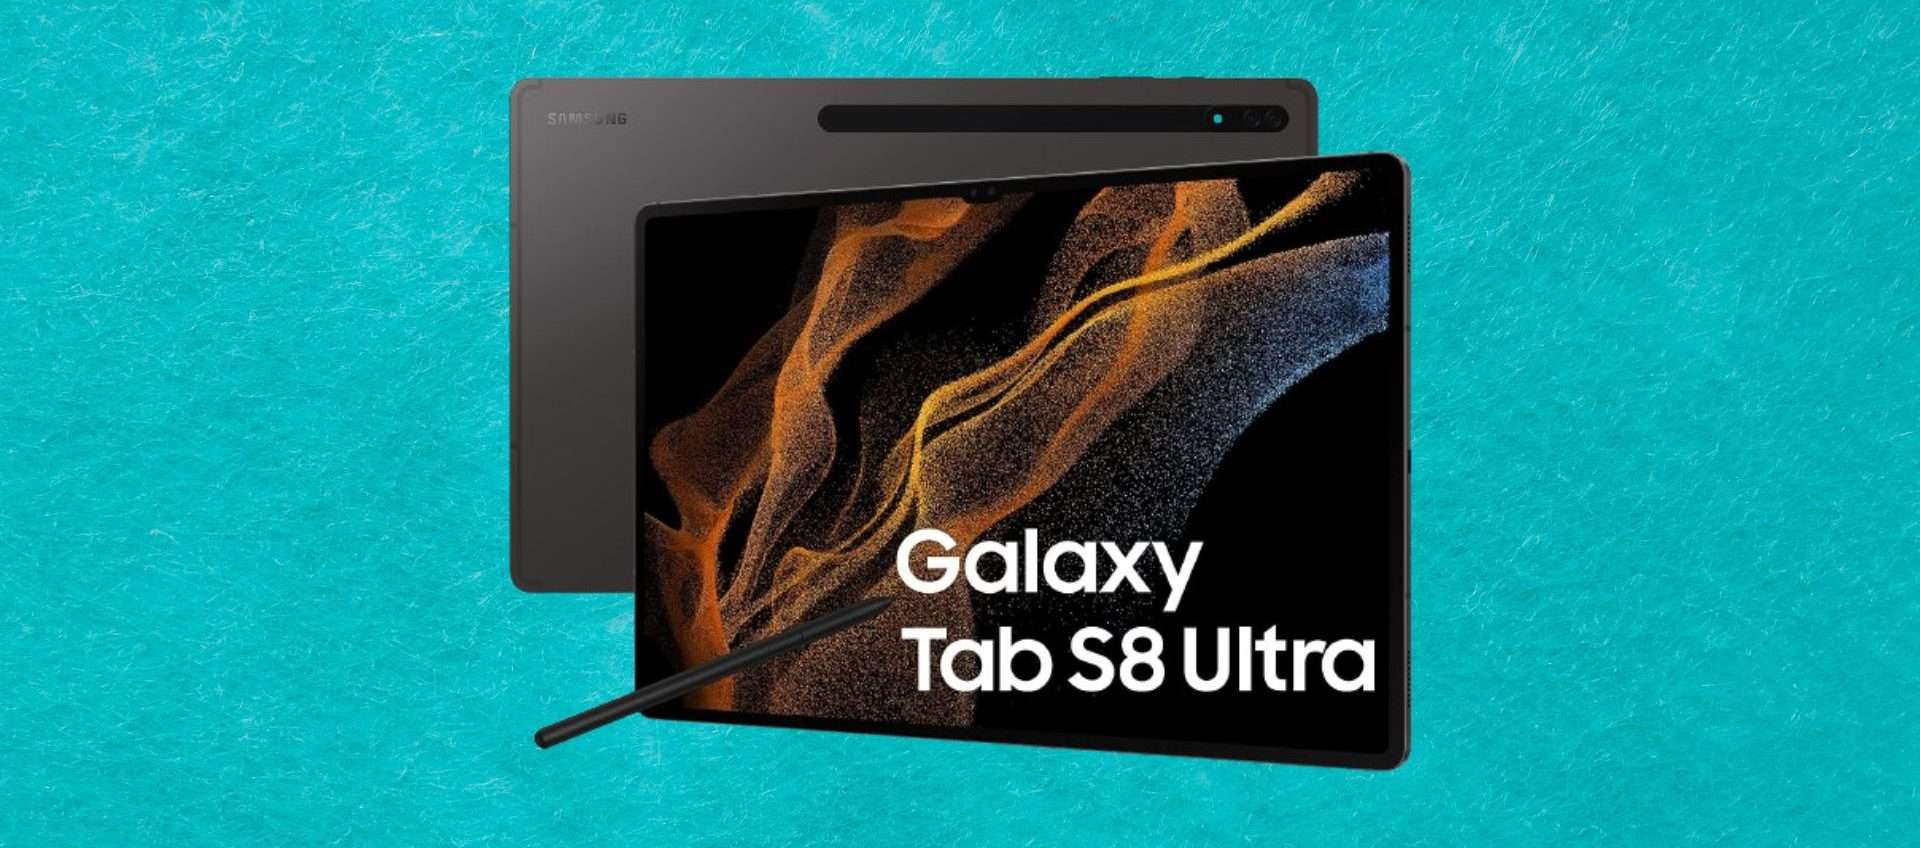 Samsung Galaxy Tab S8 Ultra in offerta al miglior prezzo di sempre: senza limiti